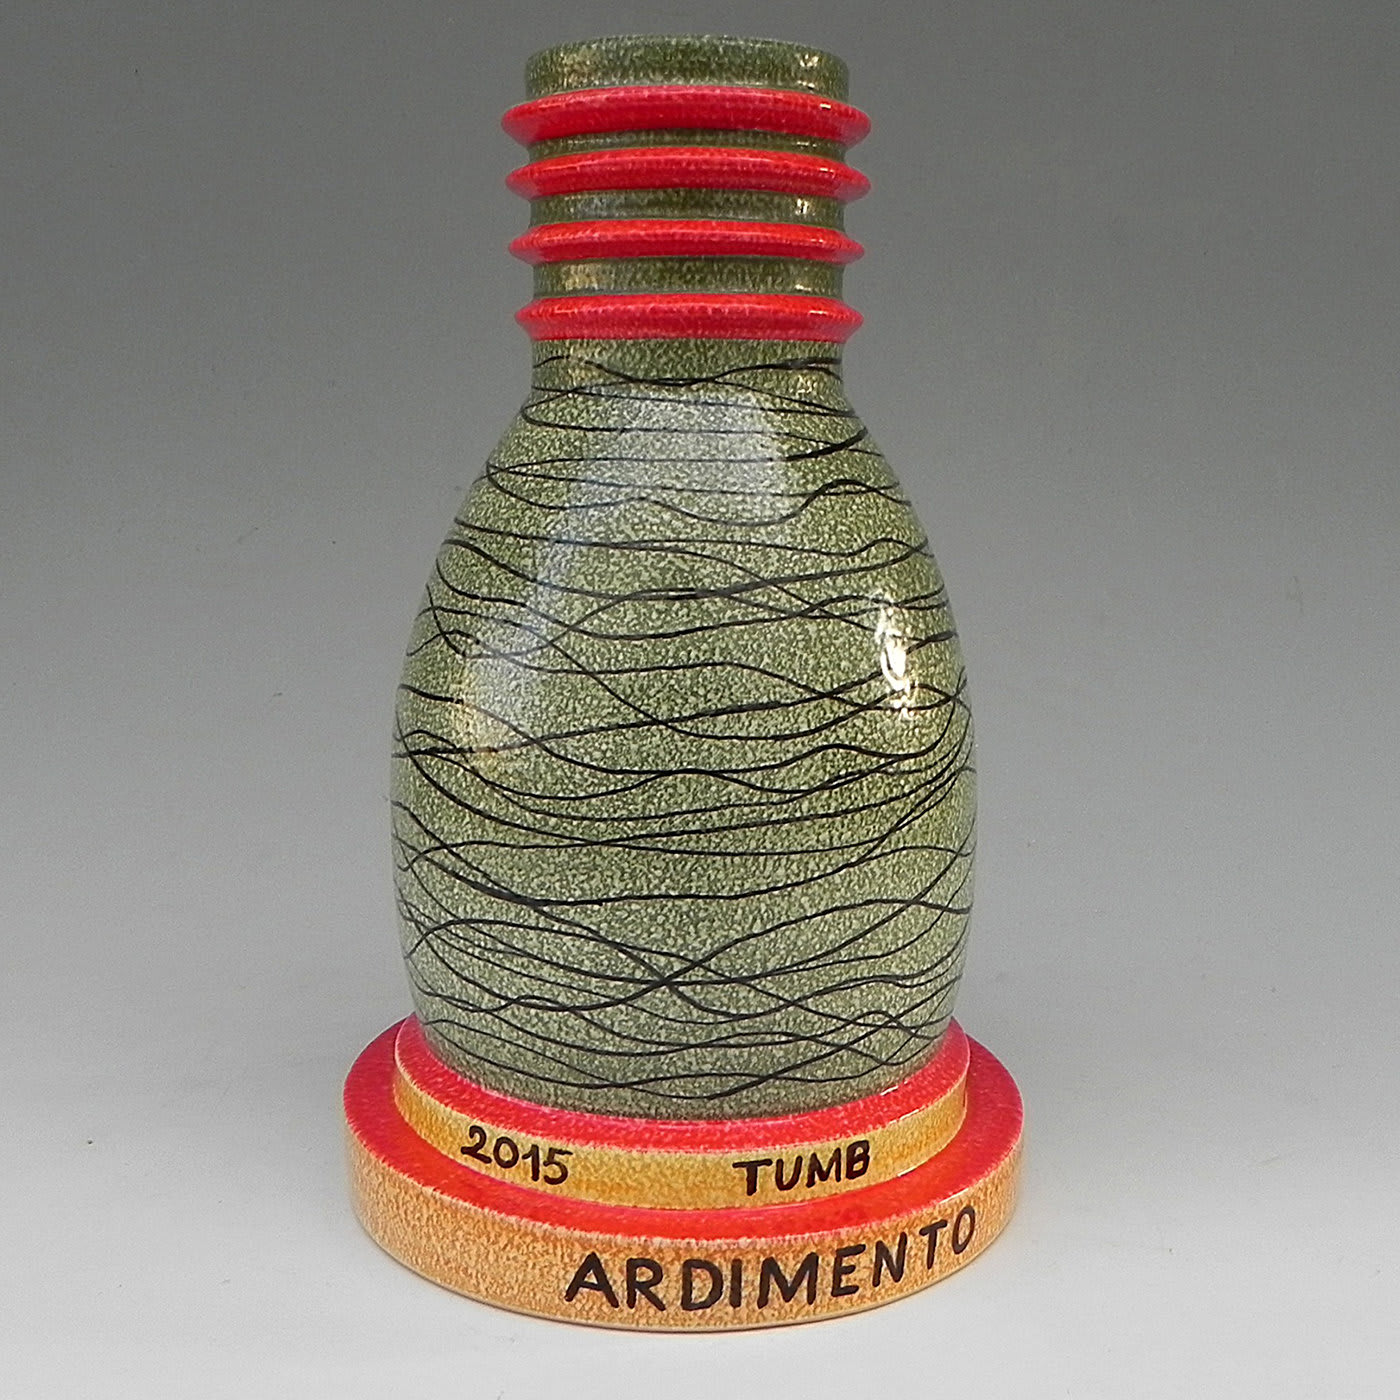 Inquinante Ceramic Vase - Mazzotti 1903